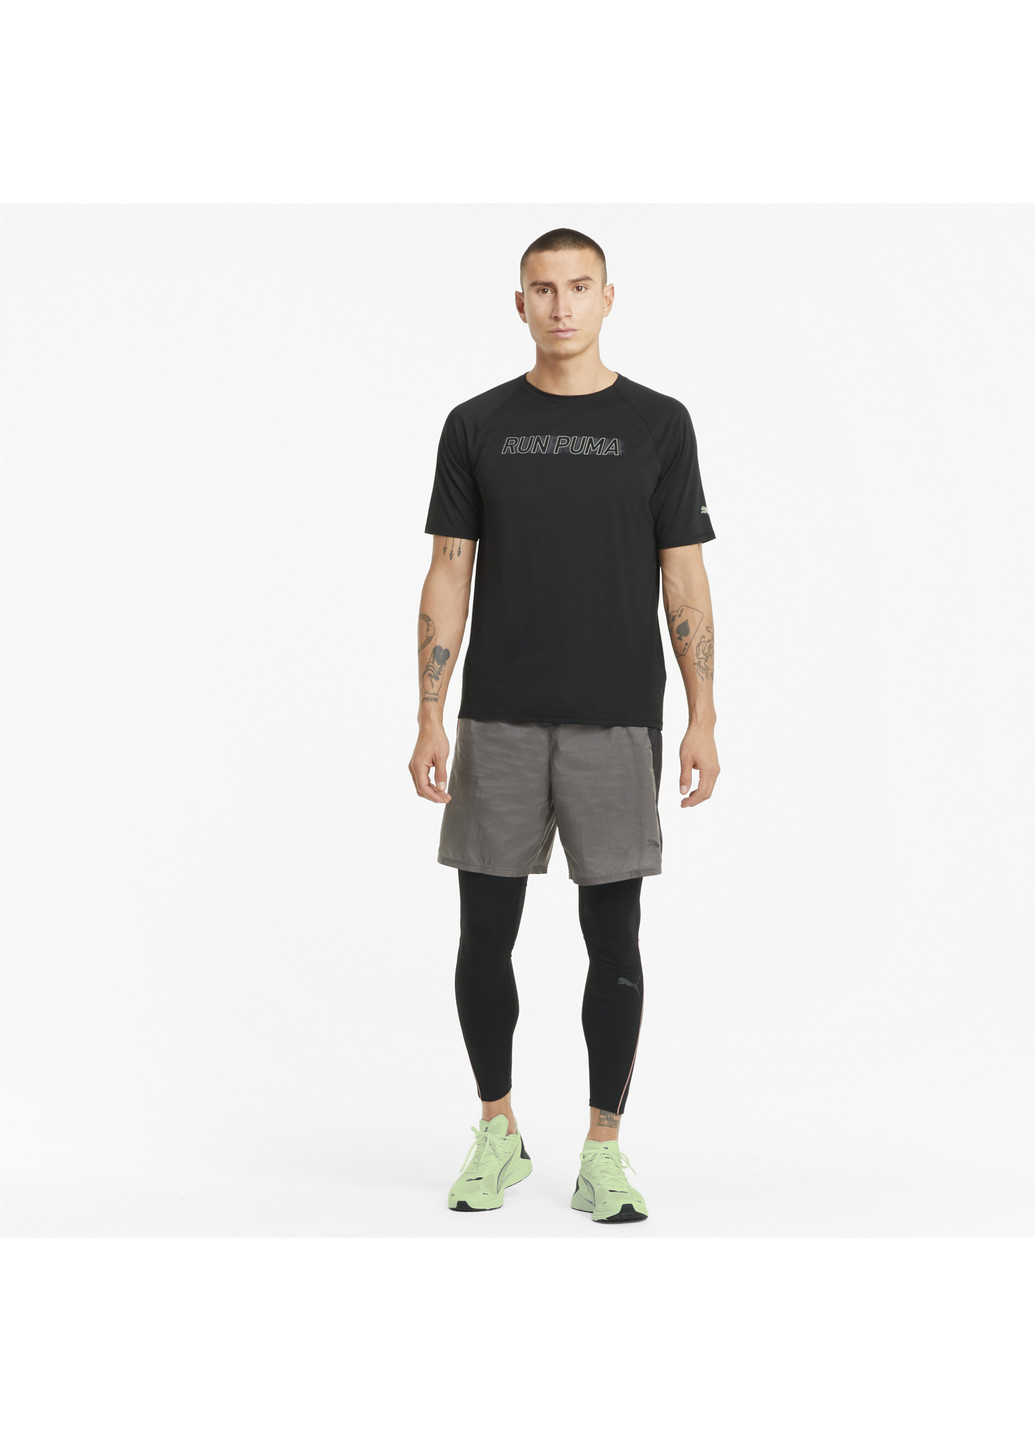 Чорна футболка cooladapt short sleeve men's running tee Puma